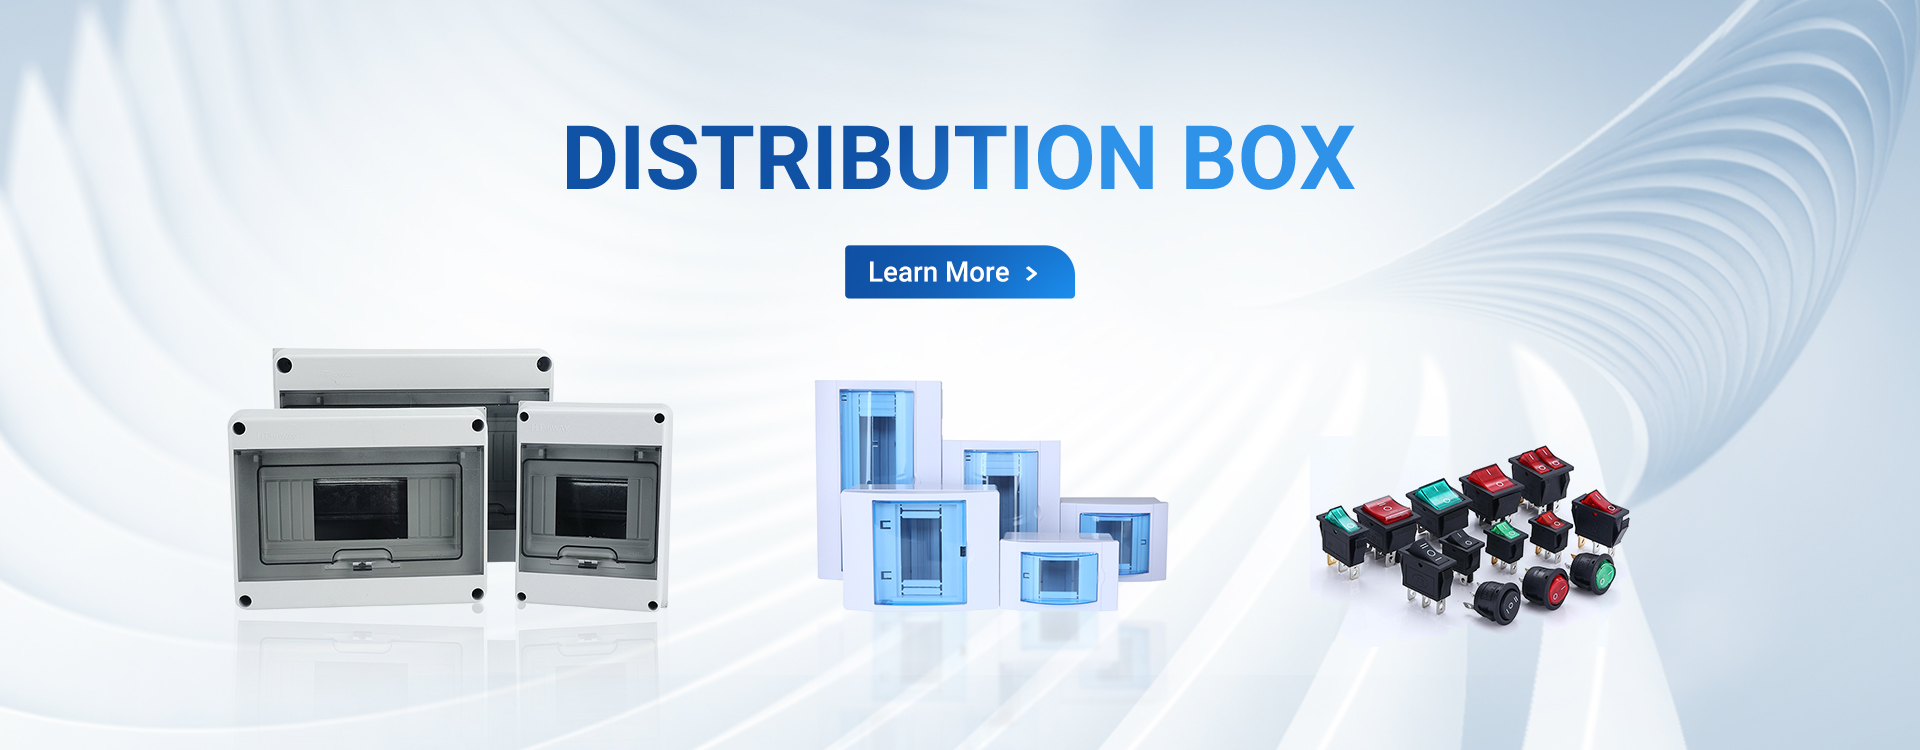 Mcb Distribution Box, Rocker Switch, Push Button Boxes - Hengbo